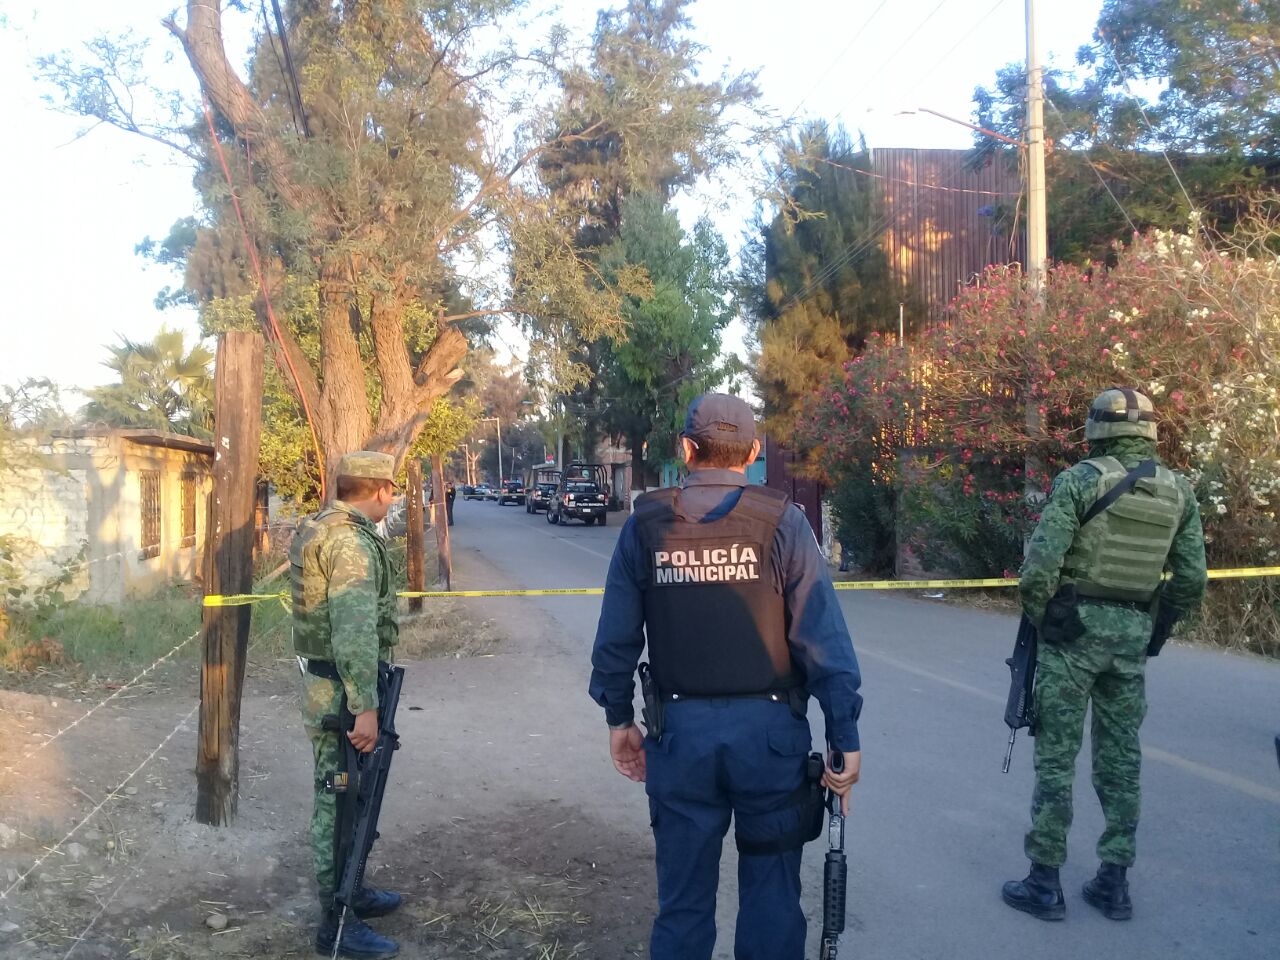 Emboscan y matan a tres policías municipales en Tomelópez, Guanajuato